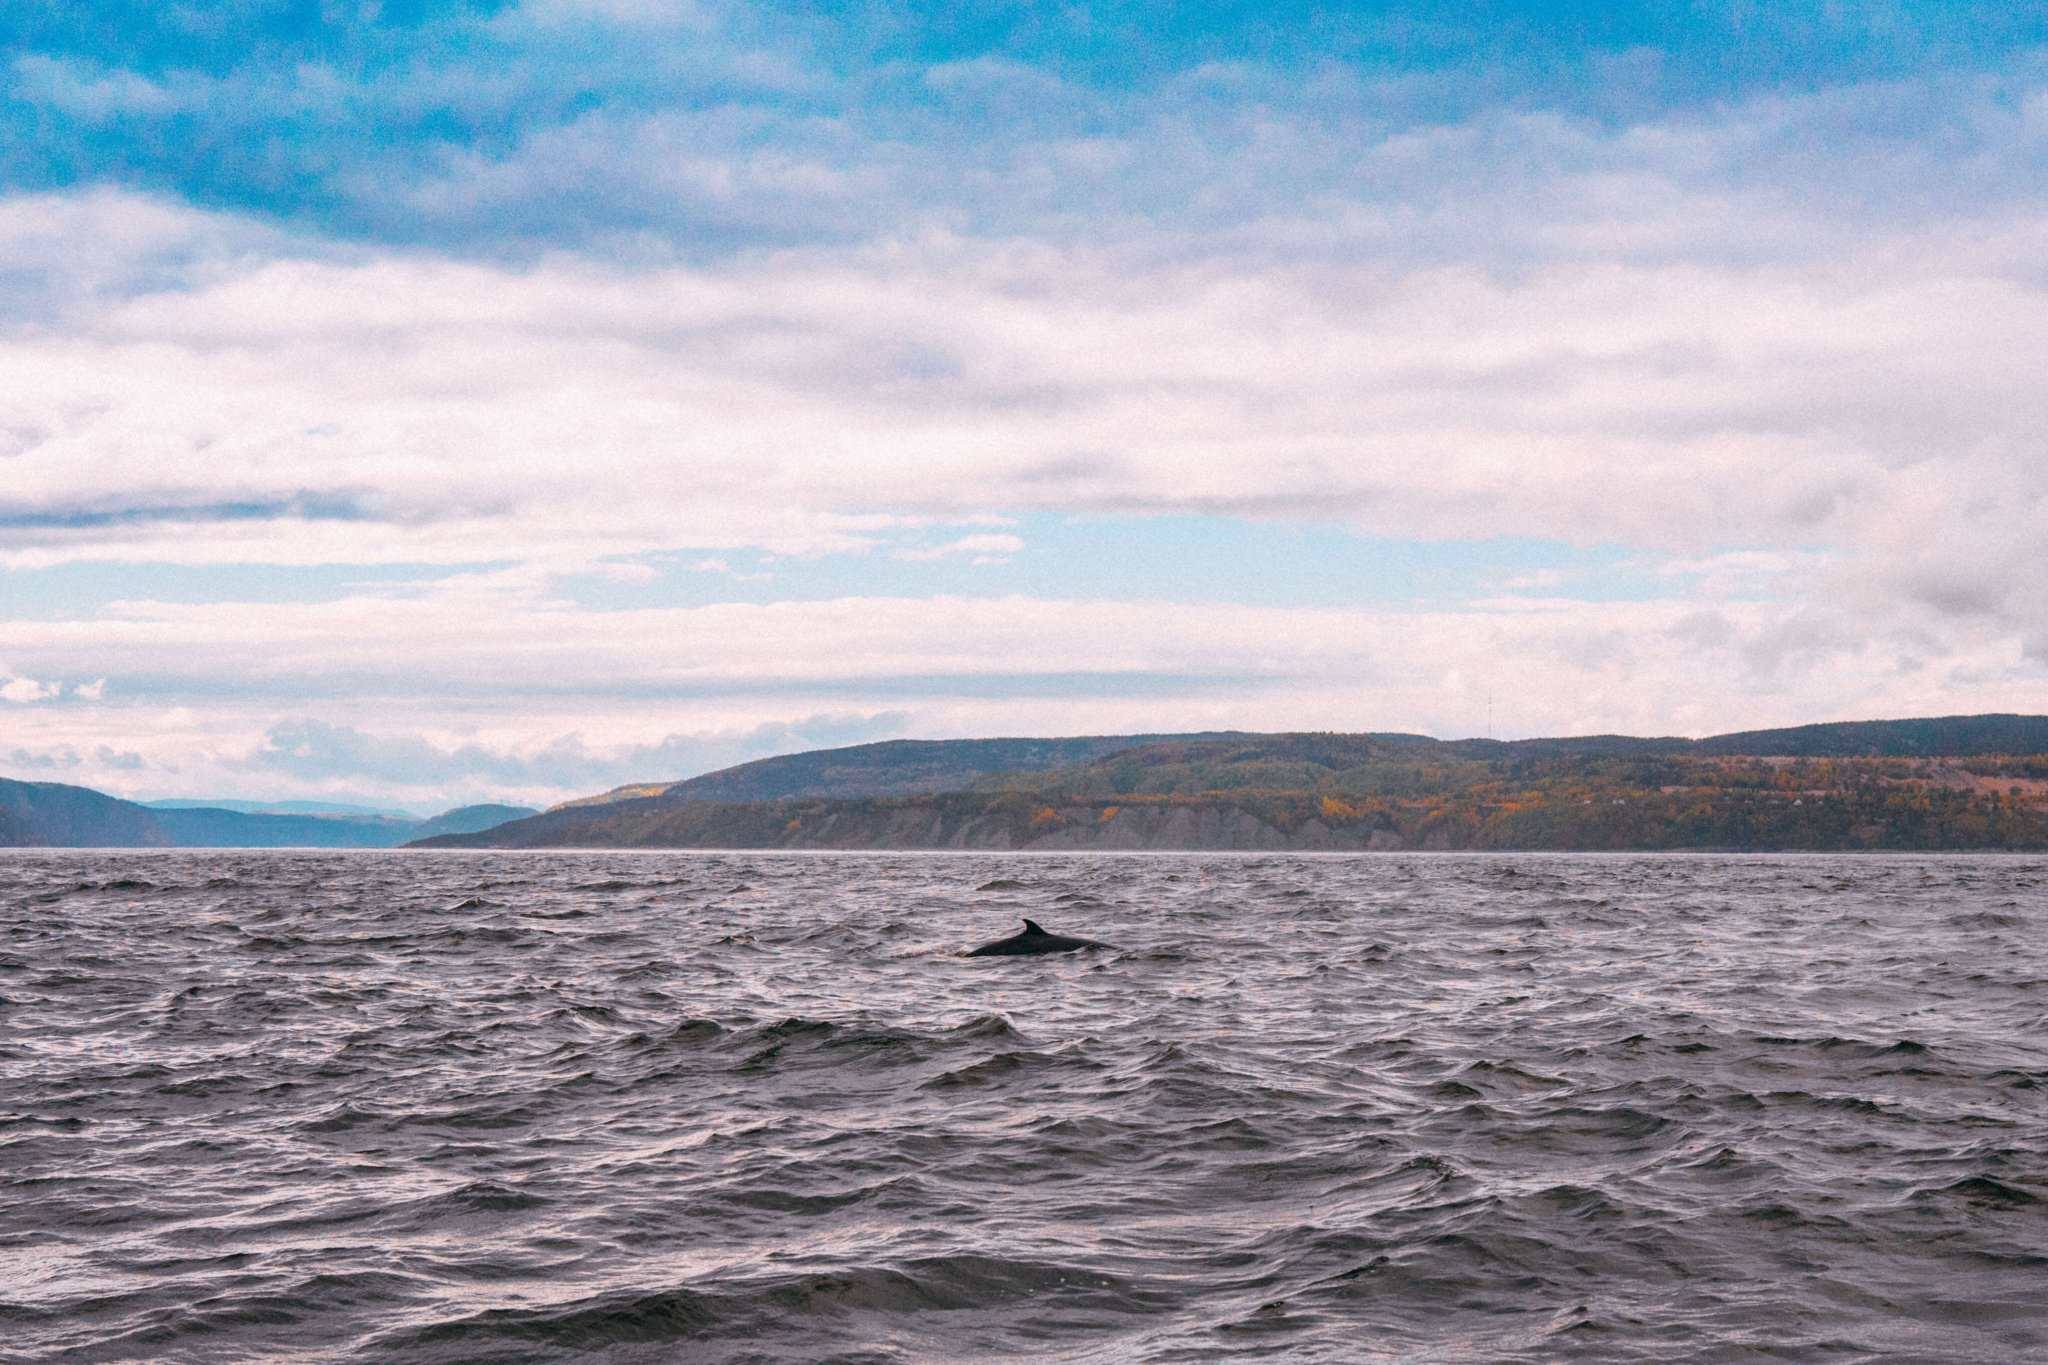 Québec Province Road Trip, Canada, HI Canada, La Malbaie, HI La Malbaie, sunrise La Malbaie, Tadoussac Autrement, whale watch Tadoussac Autrement, whale watching canada, 